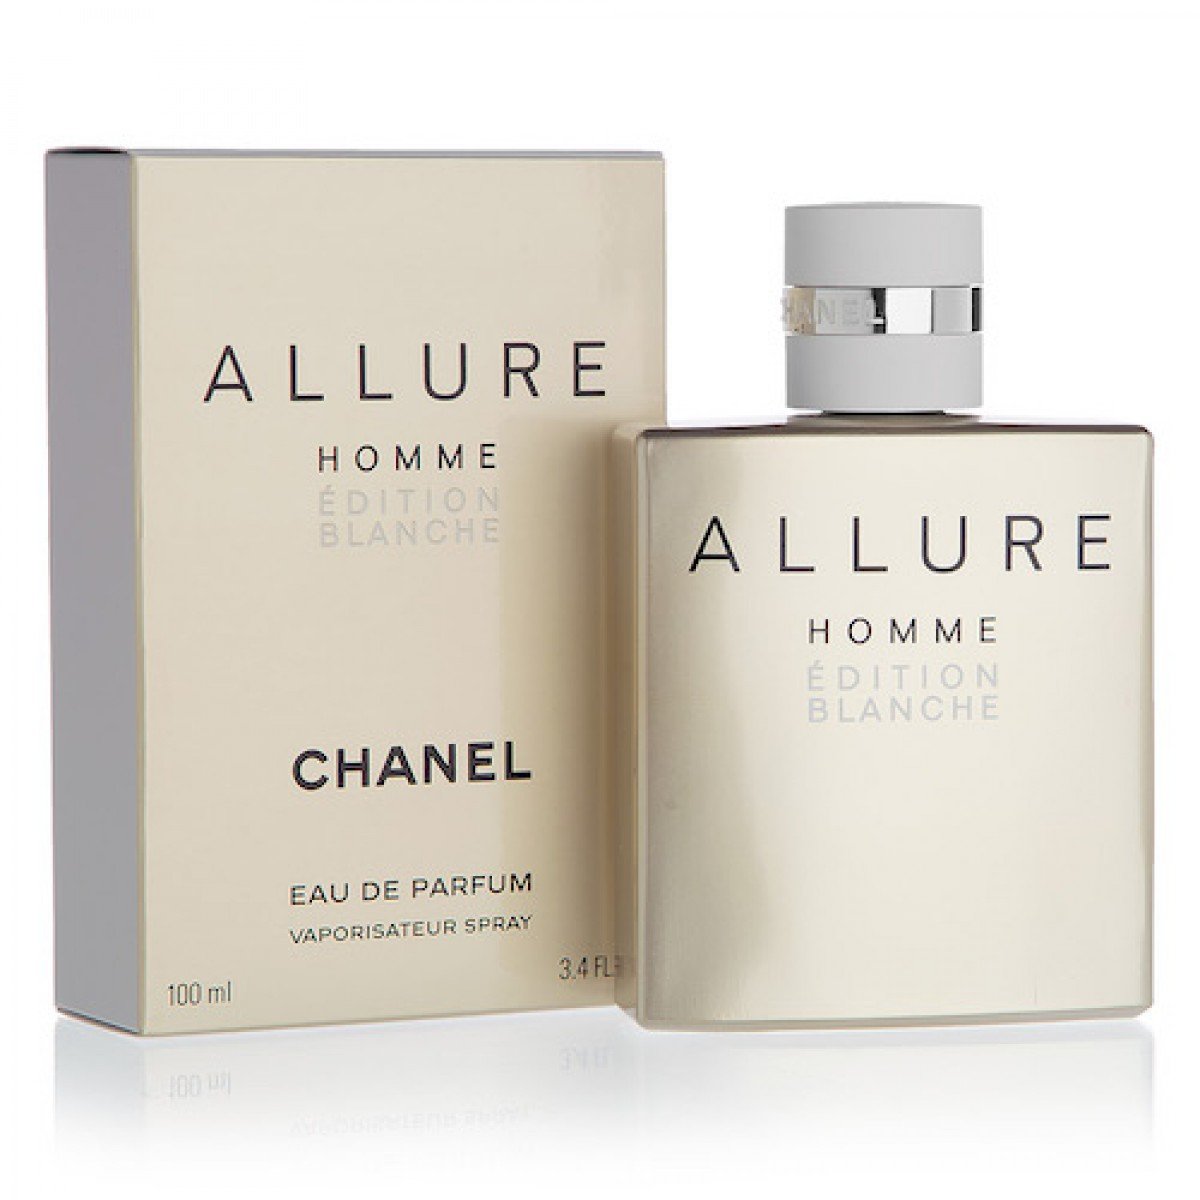 Туалетная вода allure homme. Chanel Allure homme Edition Blanche 100ml. Chanel Allure homme Edition Edition. Chanel Allure homme 100 ml. Chanel Allure homme Edition Blanche Eau de Parfum.